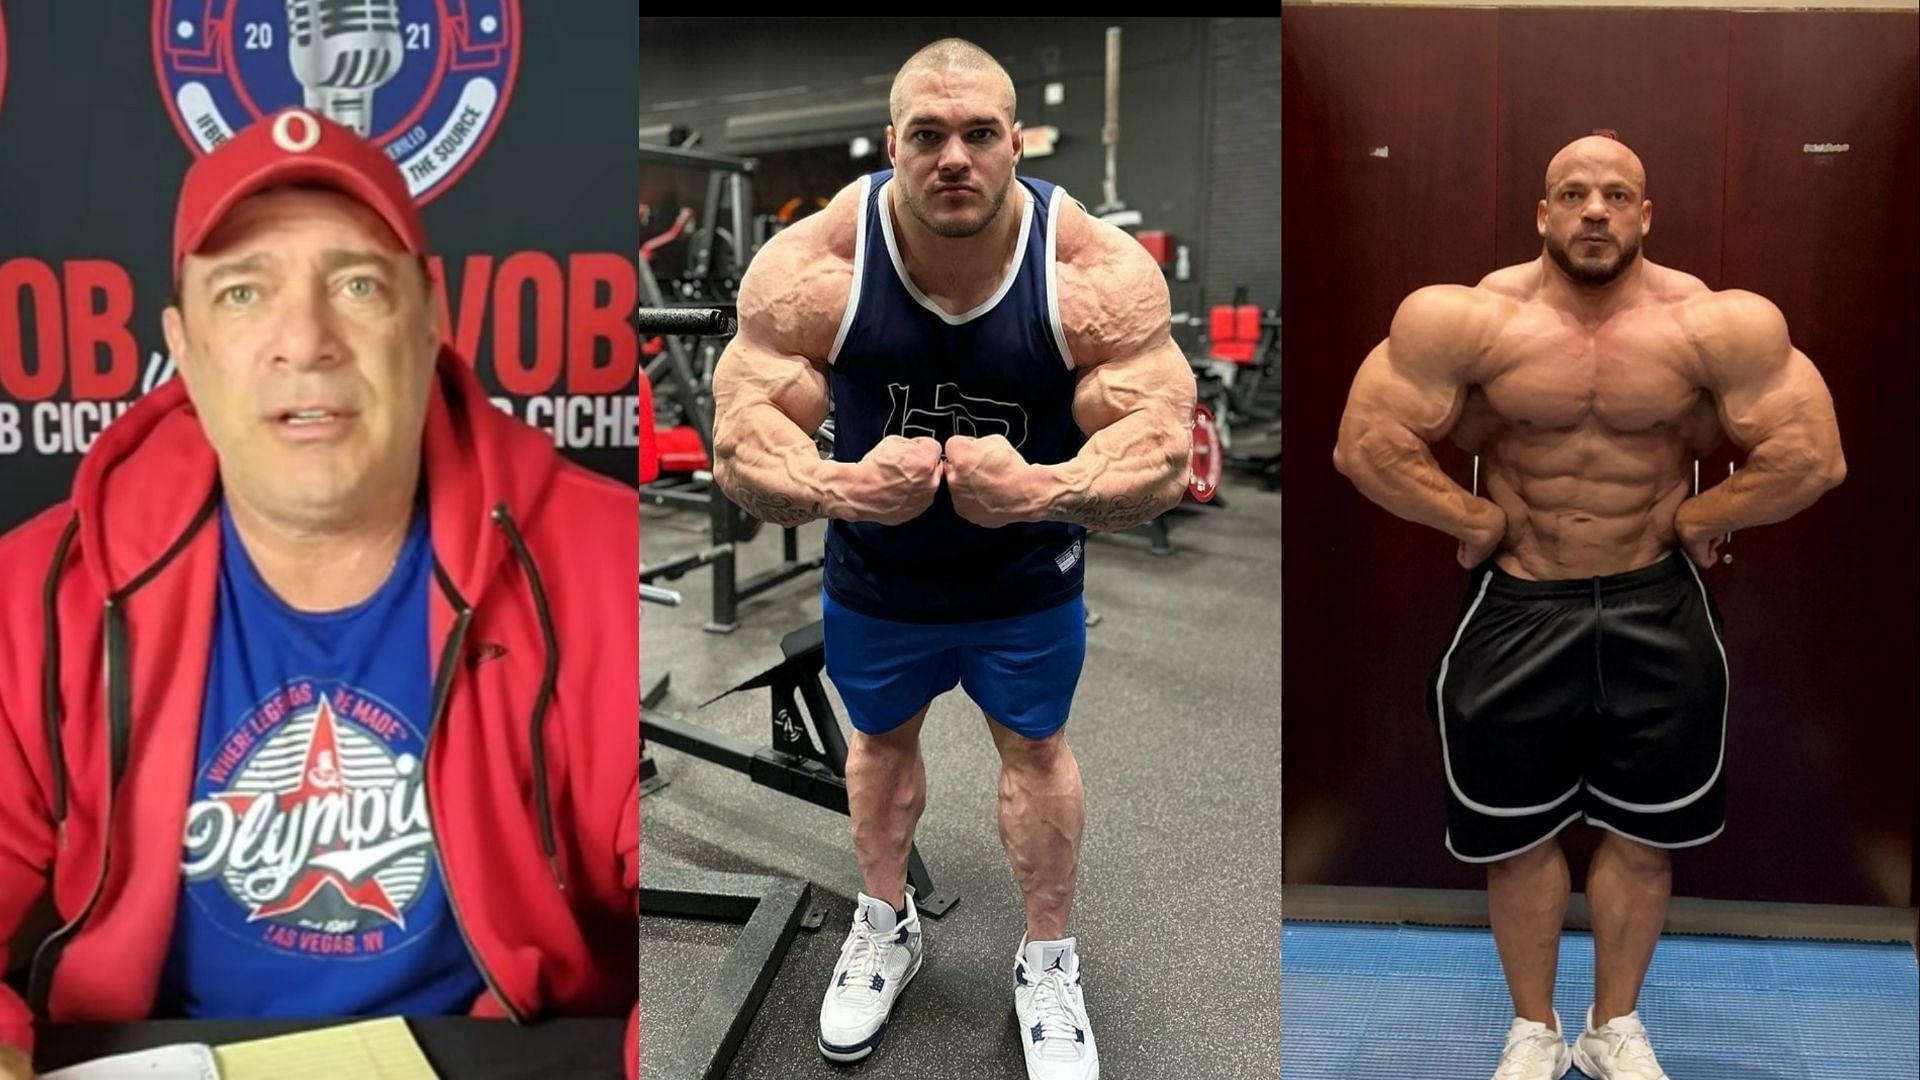 Bob Cicherillo (Image via Voice of Bodybuilding/YouTube), Nick Walker (Image via nick_walker39/Instagram) and Big Ramy (Image via big_ramy/Instagram)